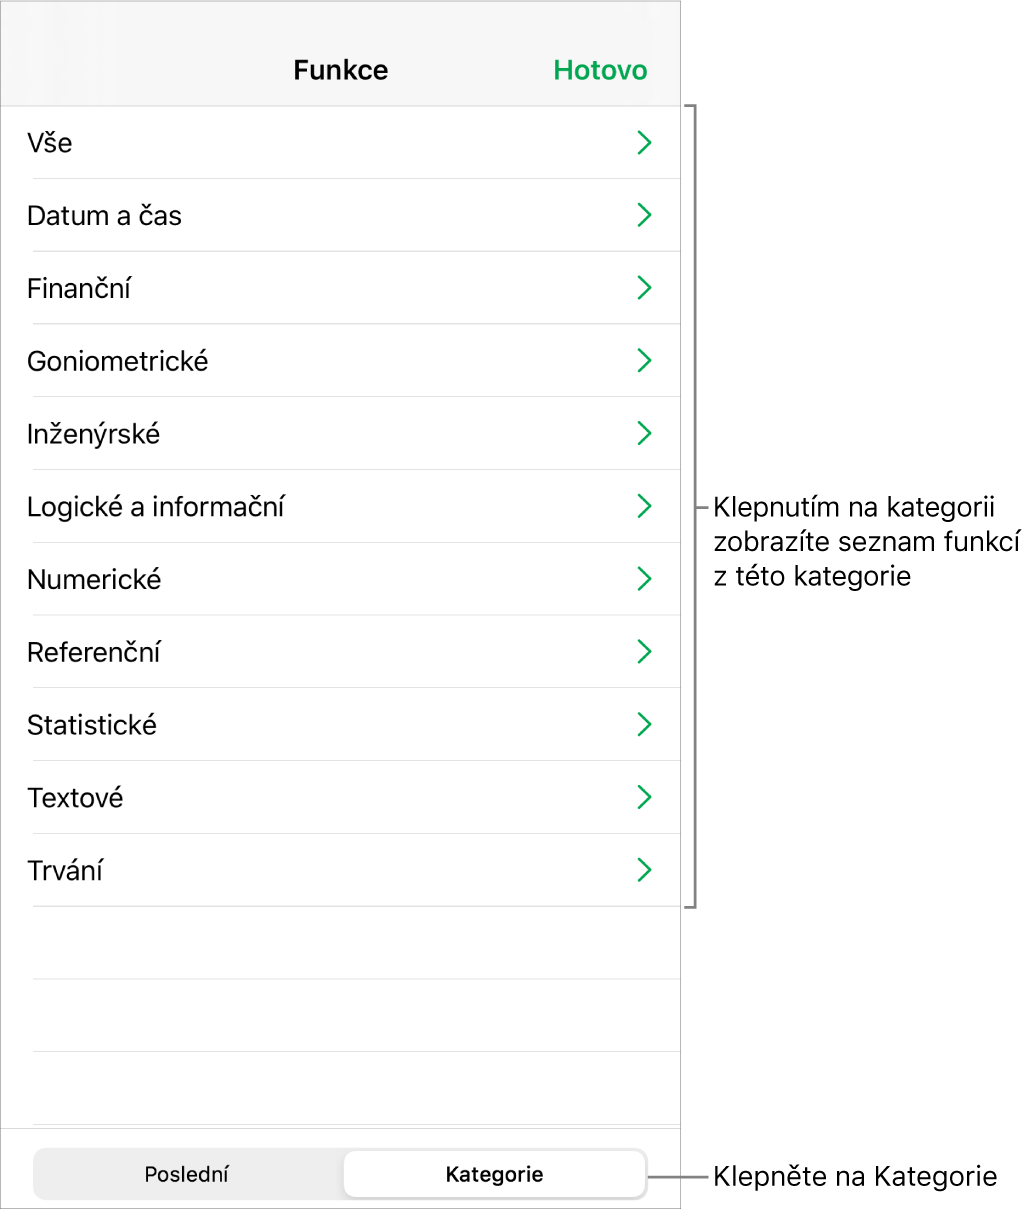 Prohlížeč funkcí s vybraným tlačítkem Kategorie a seznamem kategorií pod ním